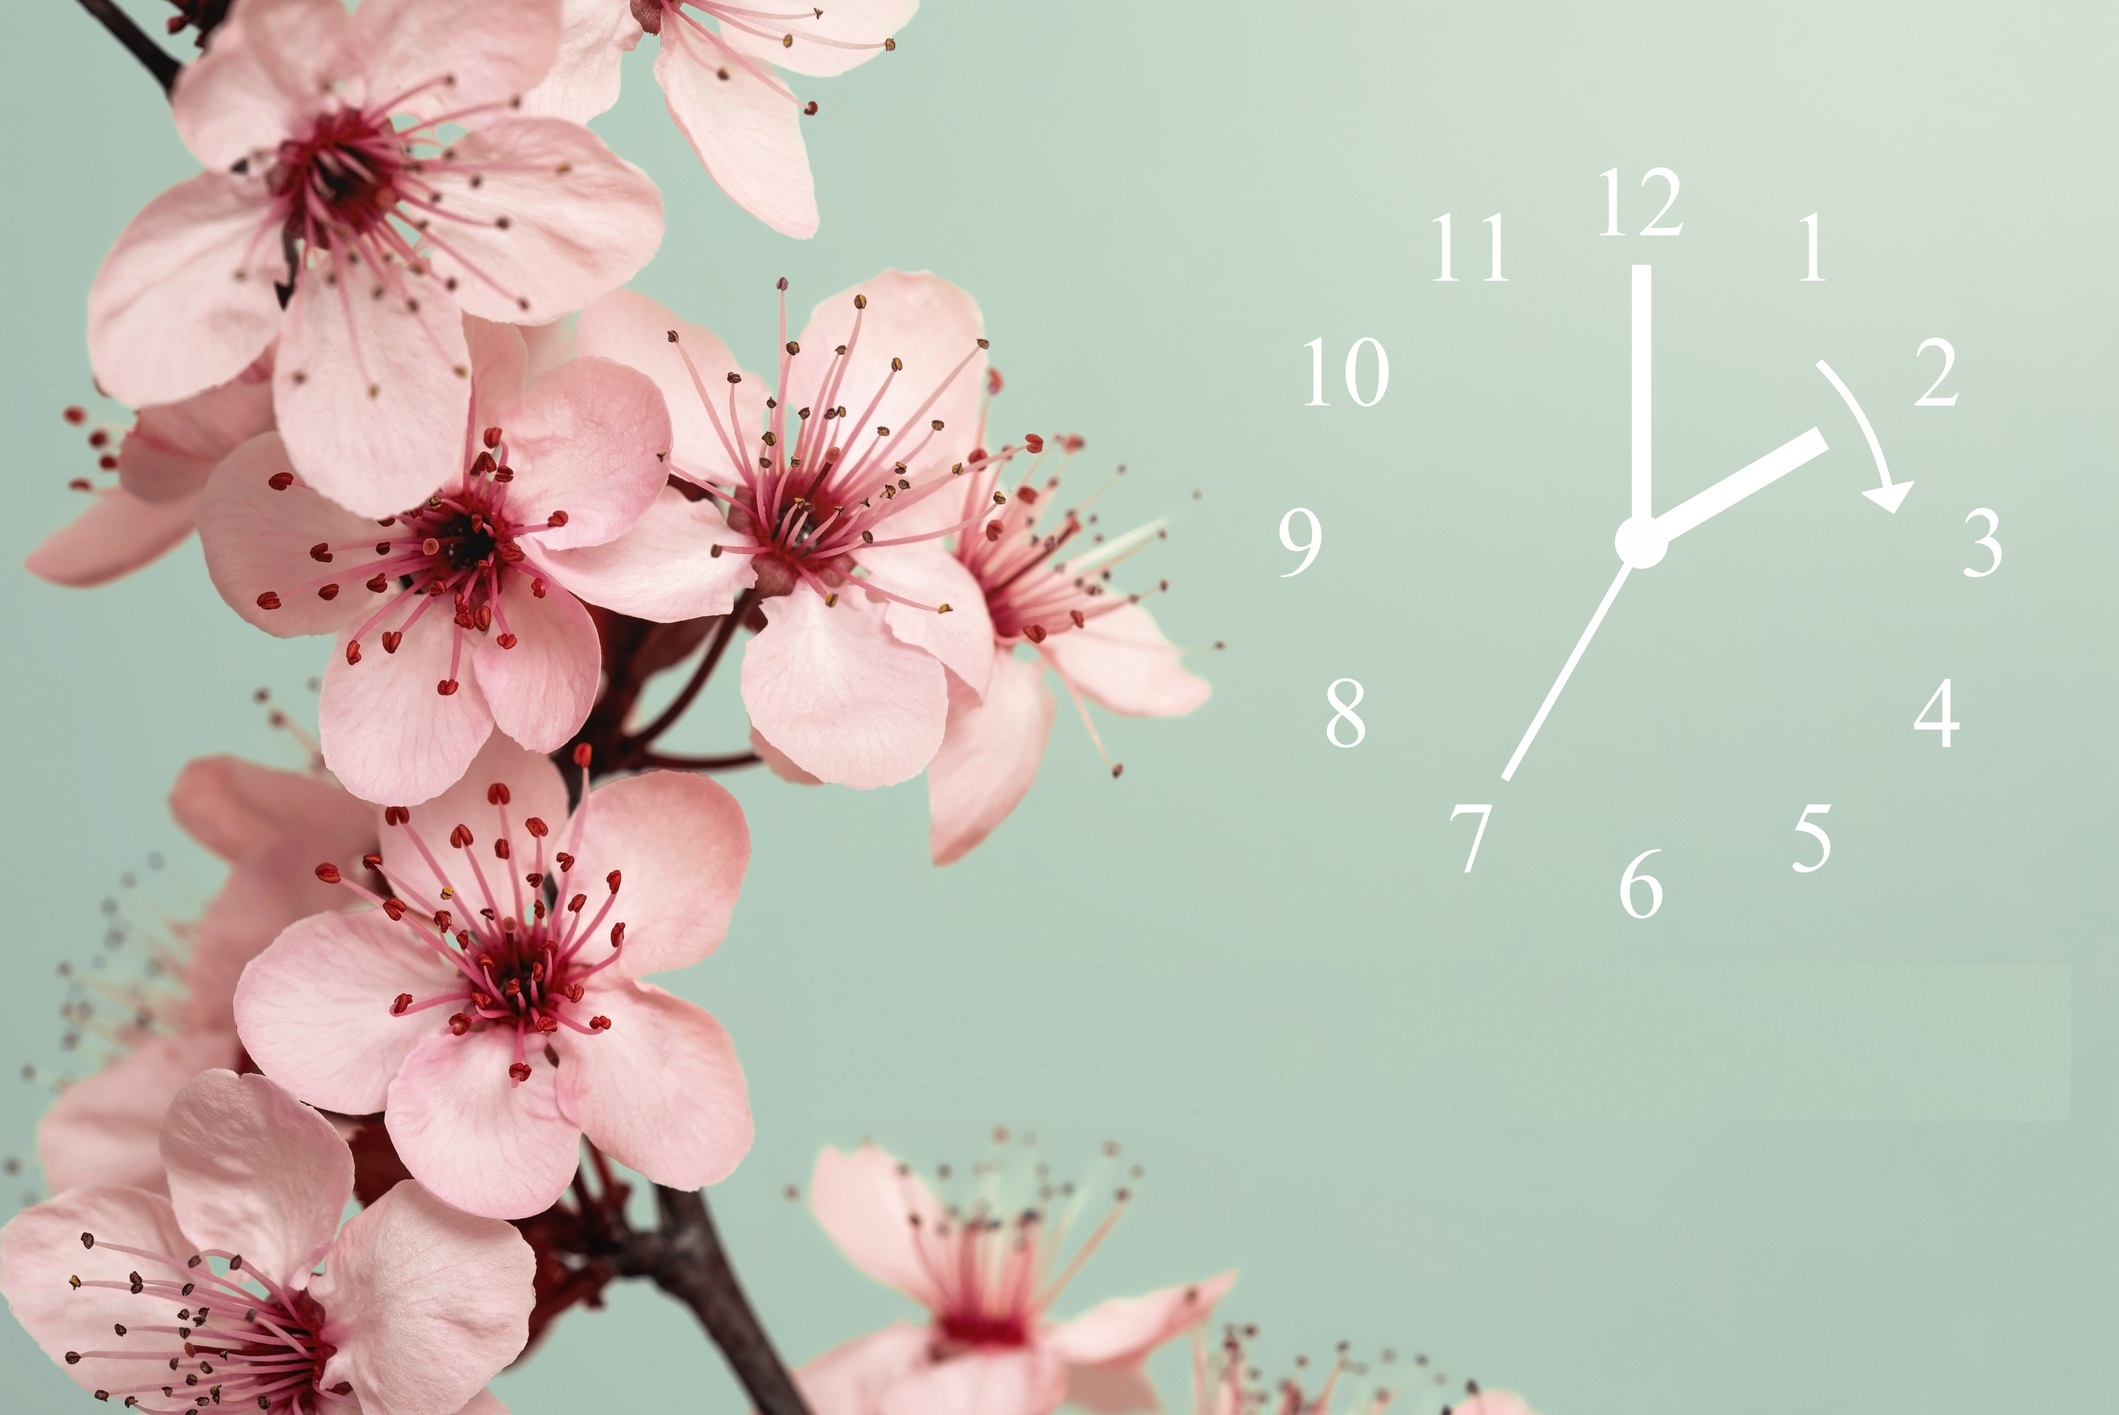  flori de cires roz in partea dreapta, iar in stanga imaginii un ceas fara cadran, pe un fundal verde deschis